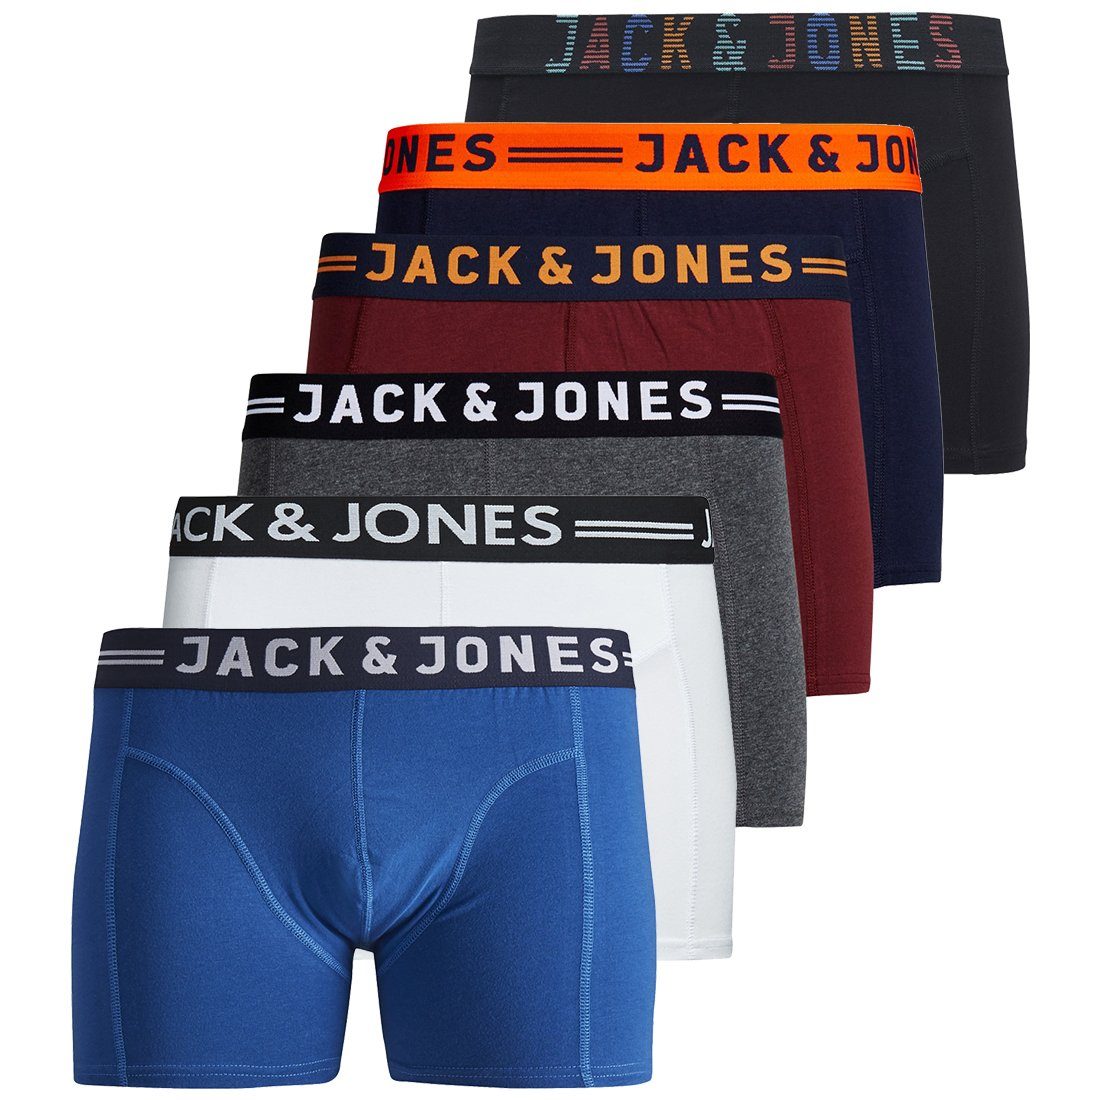 Jack & Jones Boxershorts JACK JONES Boxershorts 6er Pack Herren Männer  Short Unterhose Marke S M L XL XXL